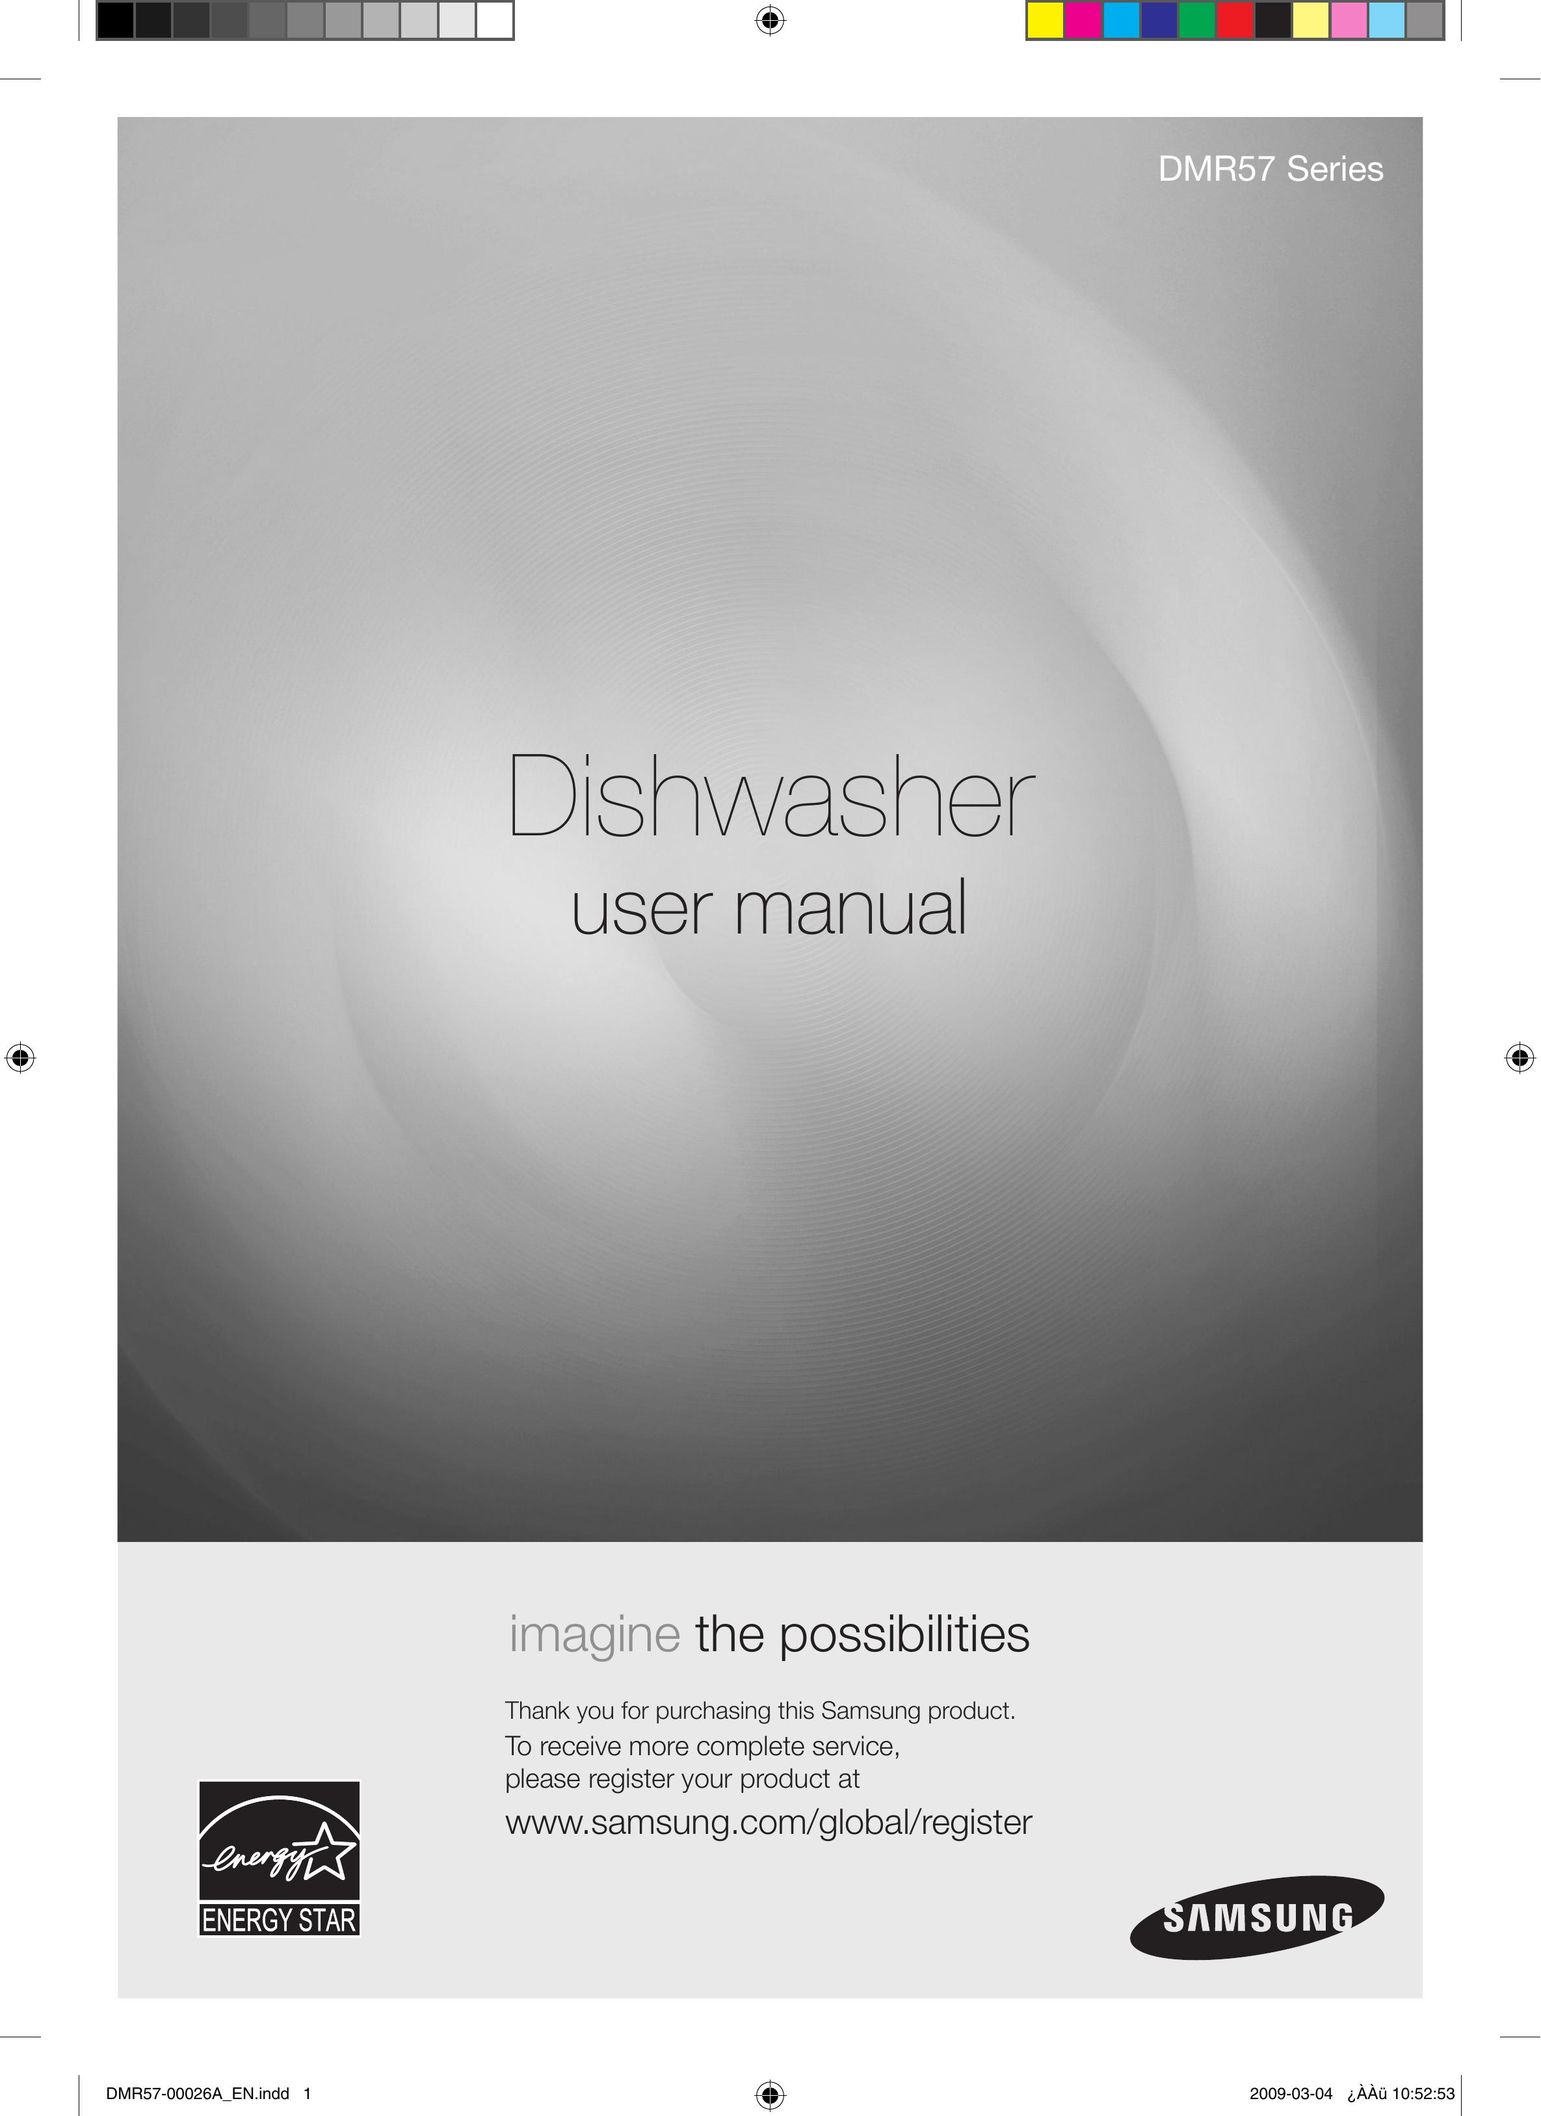 Samsung DMR57LHS Dishwasher User Manual